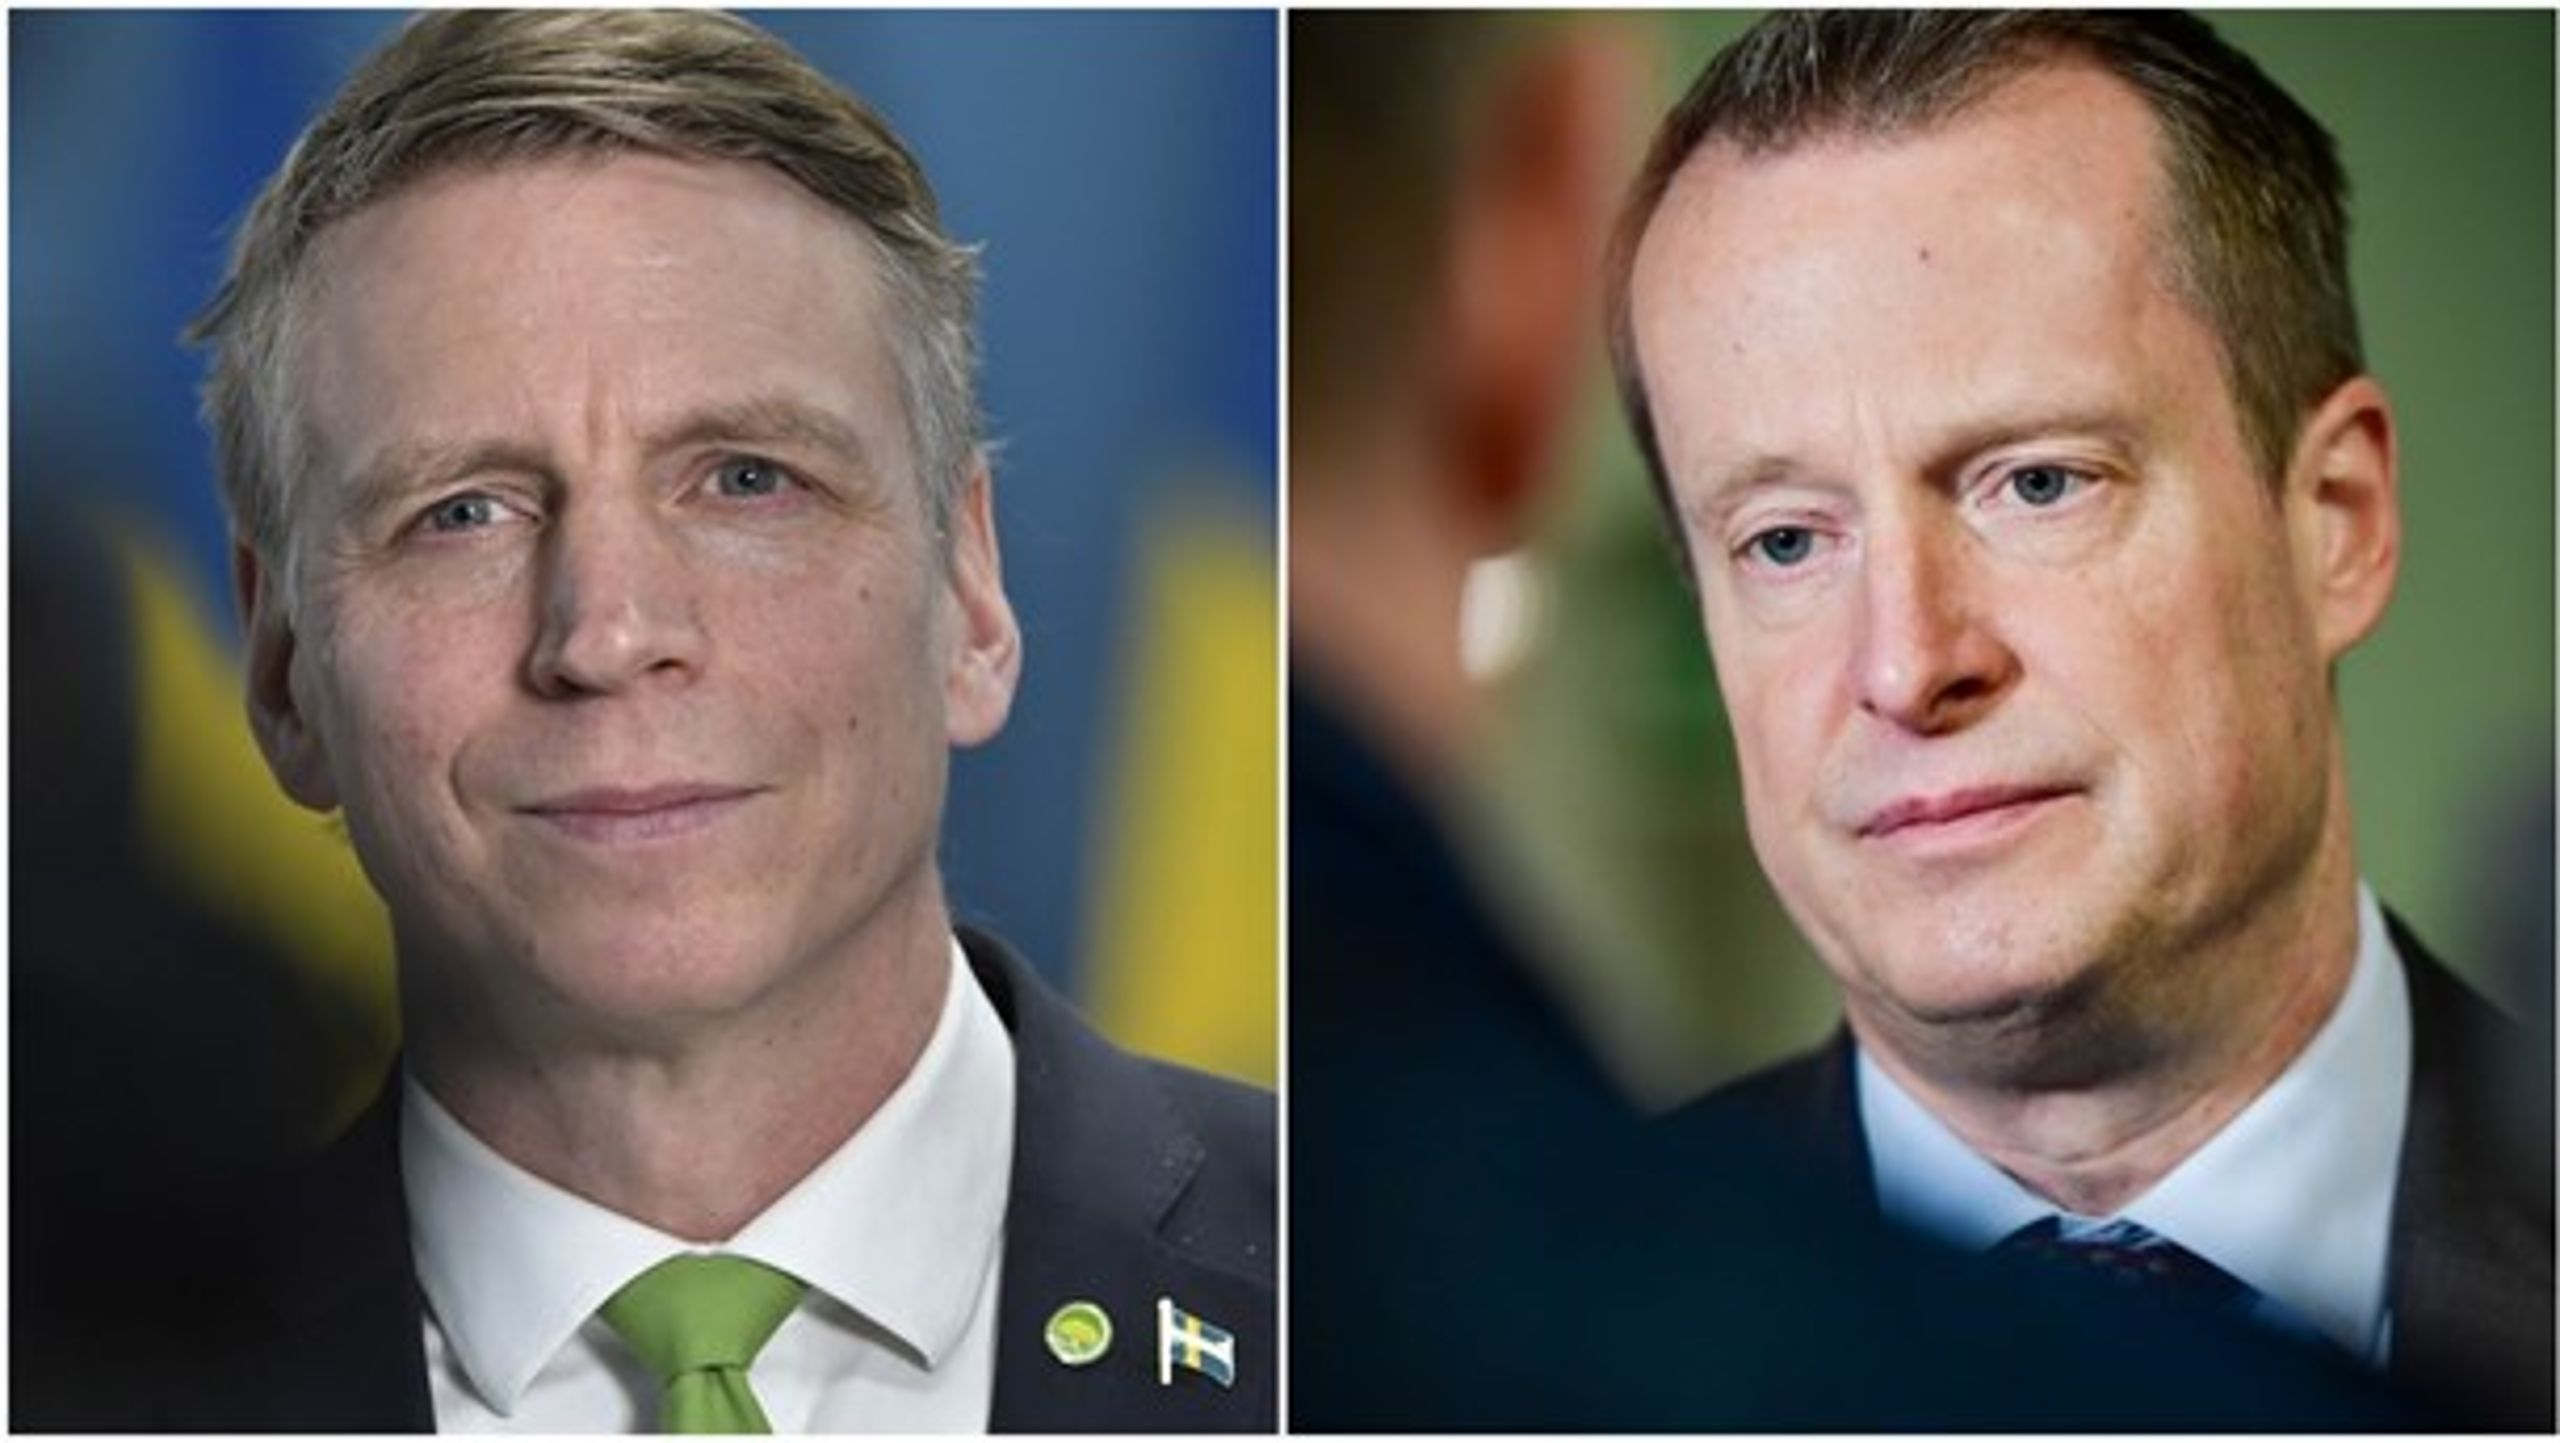 Miljö- och klimatminister Per Bolund (MP) och energiminister Anders Ygeman (S) ska möta politikerna i försvarsutskottet och näringsutskottet.